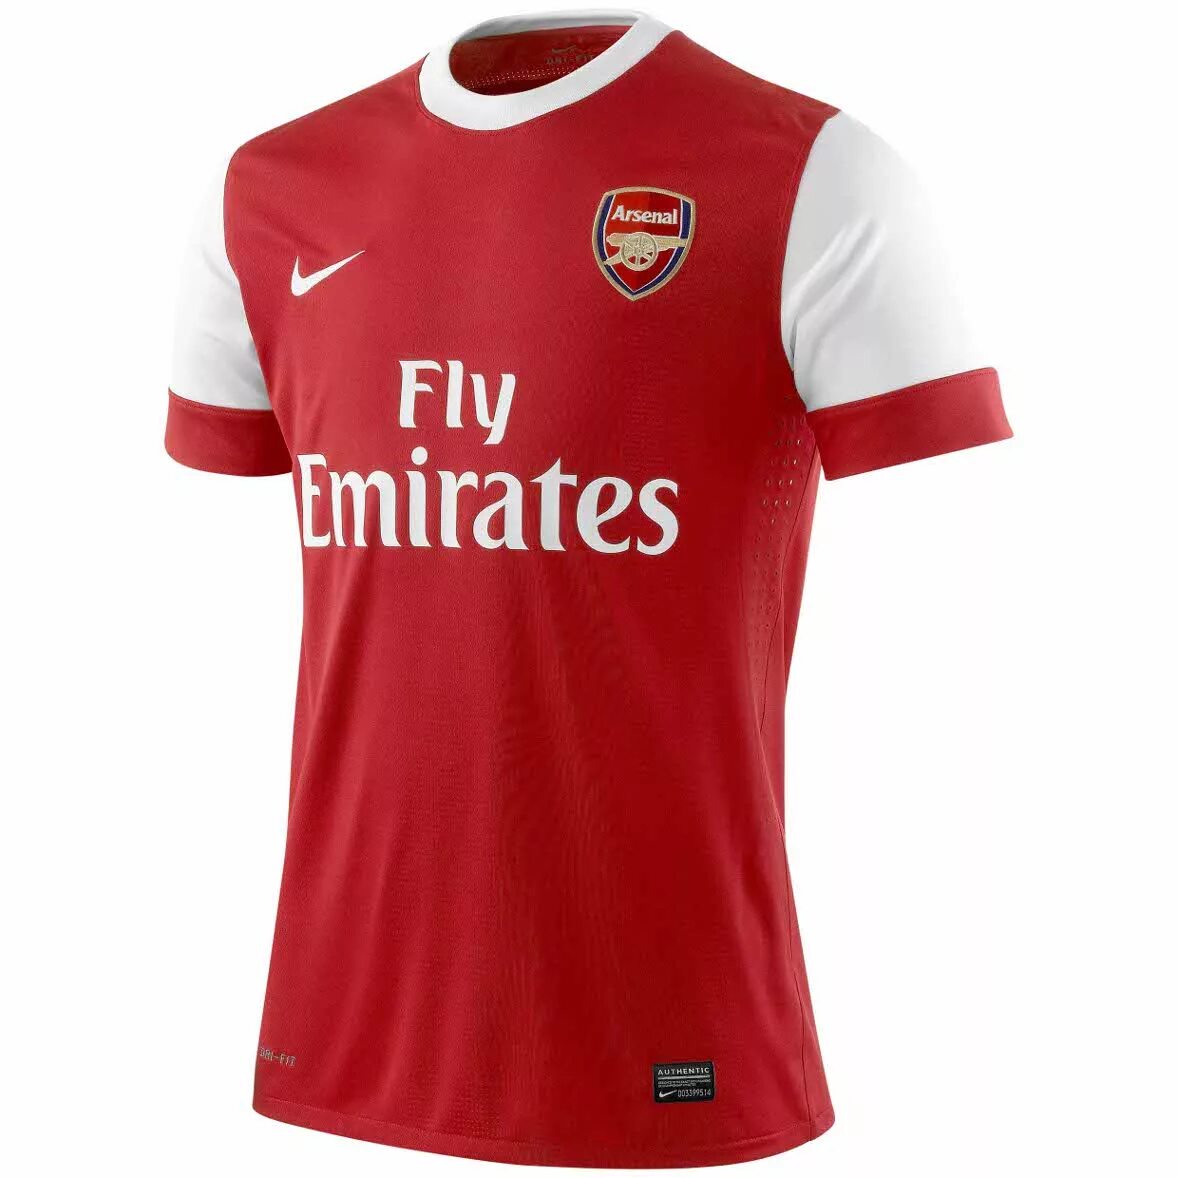 Форма арсенала купить. Arsenal 2003 Home Kit. Arsenal Kit 2010. Arsenal London форма 10. Arsenal 2010 Jersey.